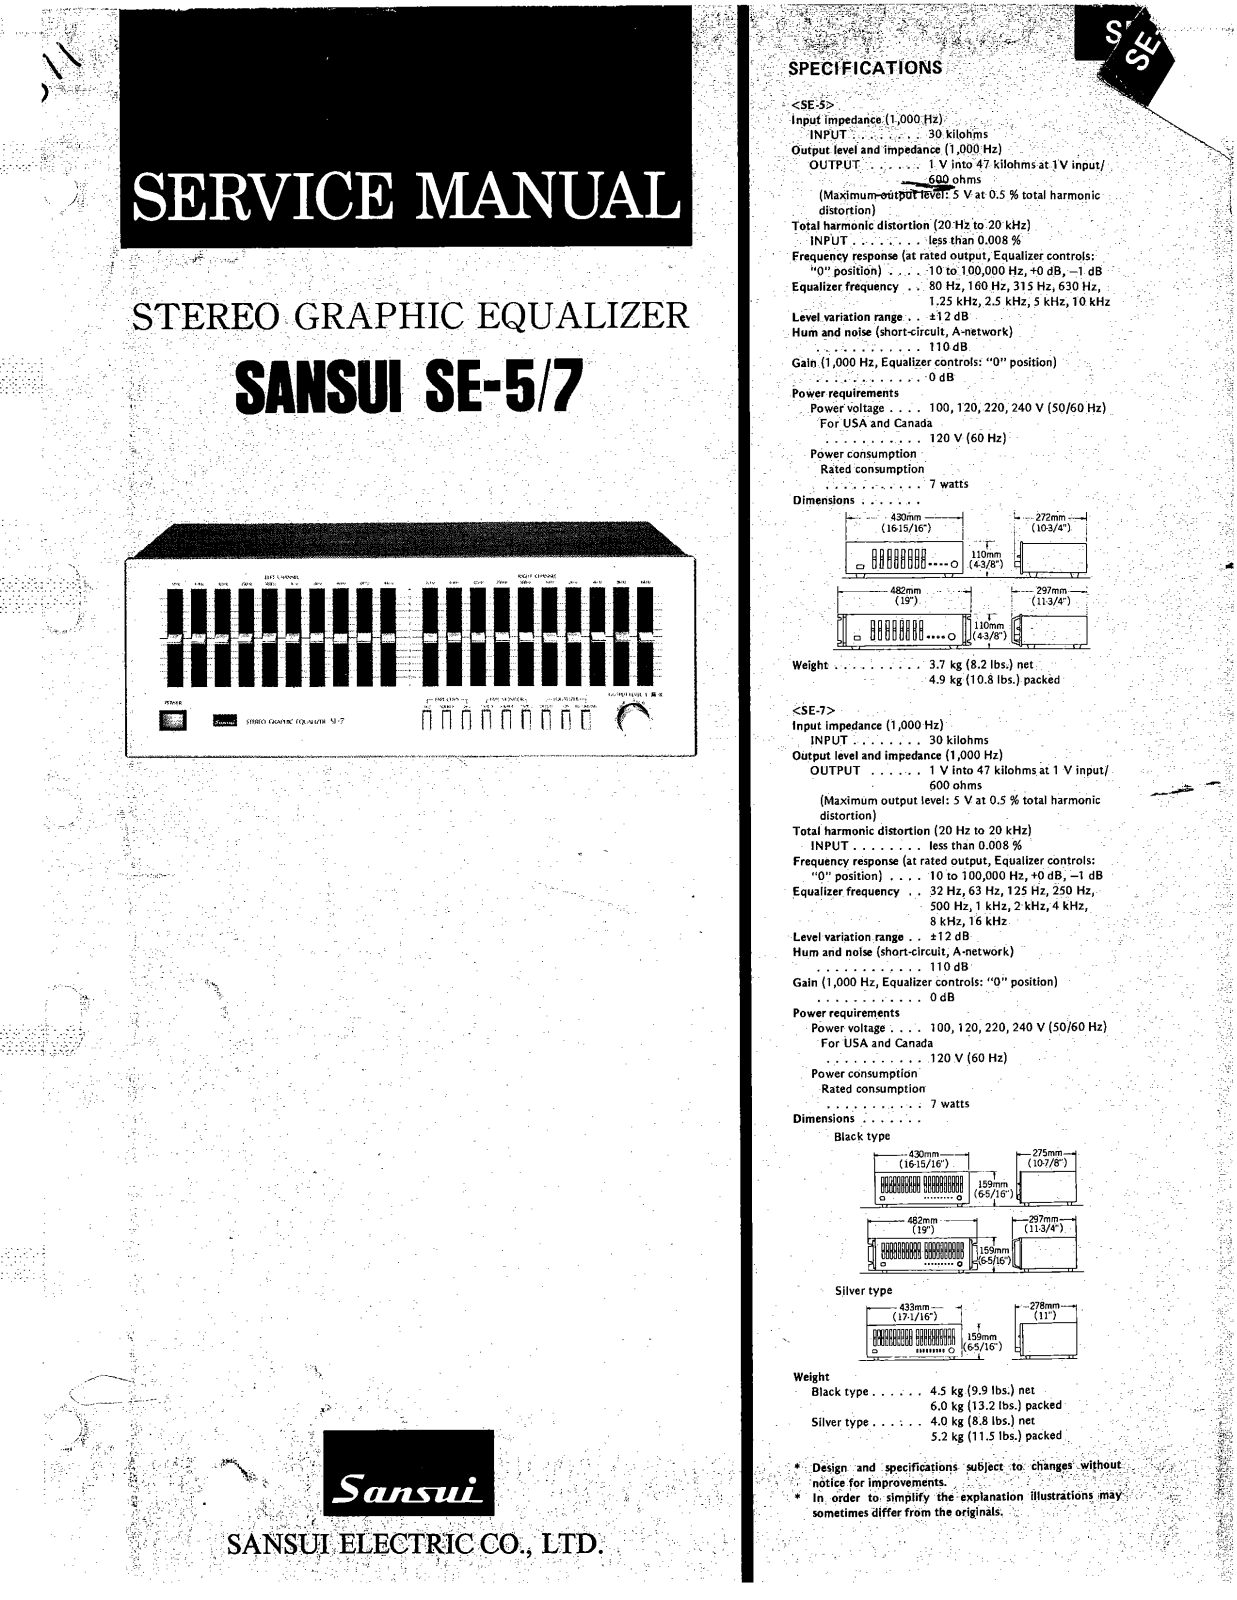 Sansui SE-5 Service Manual